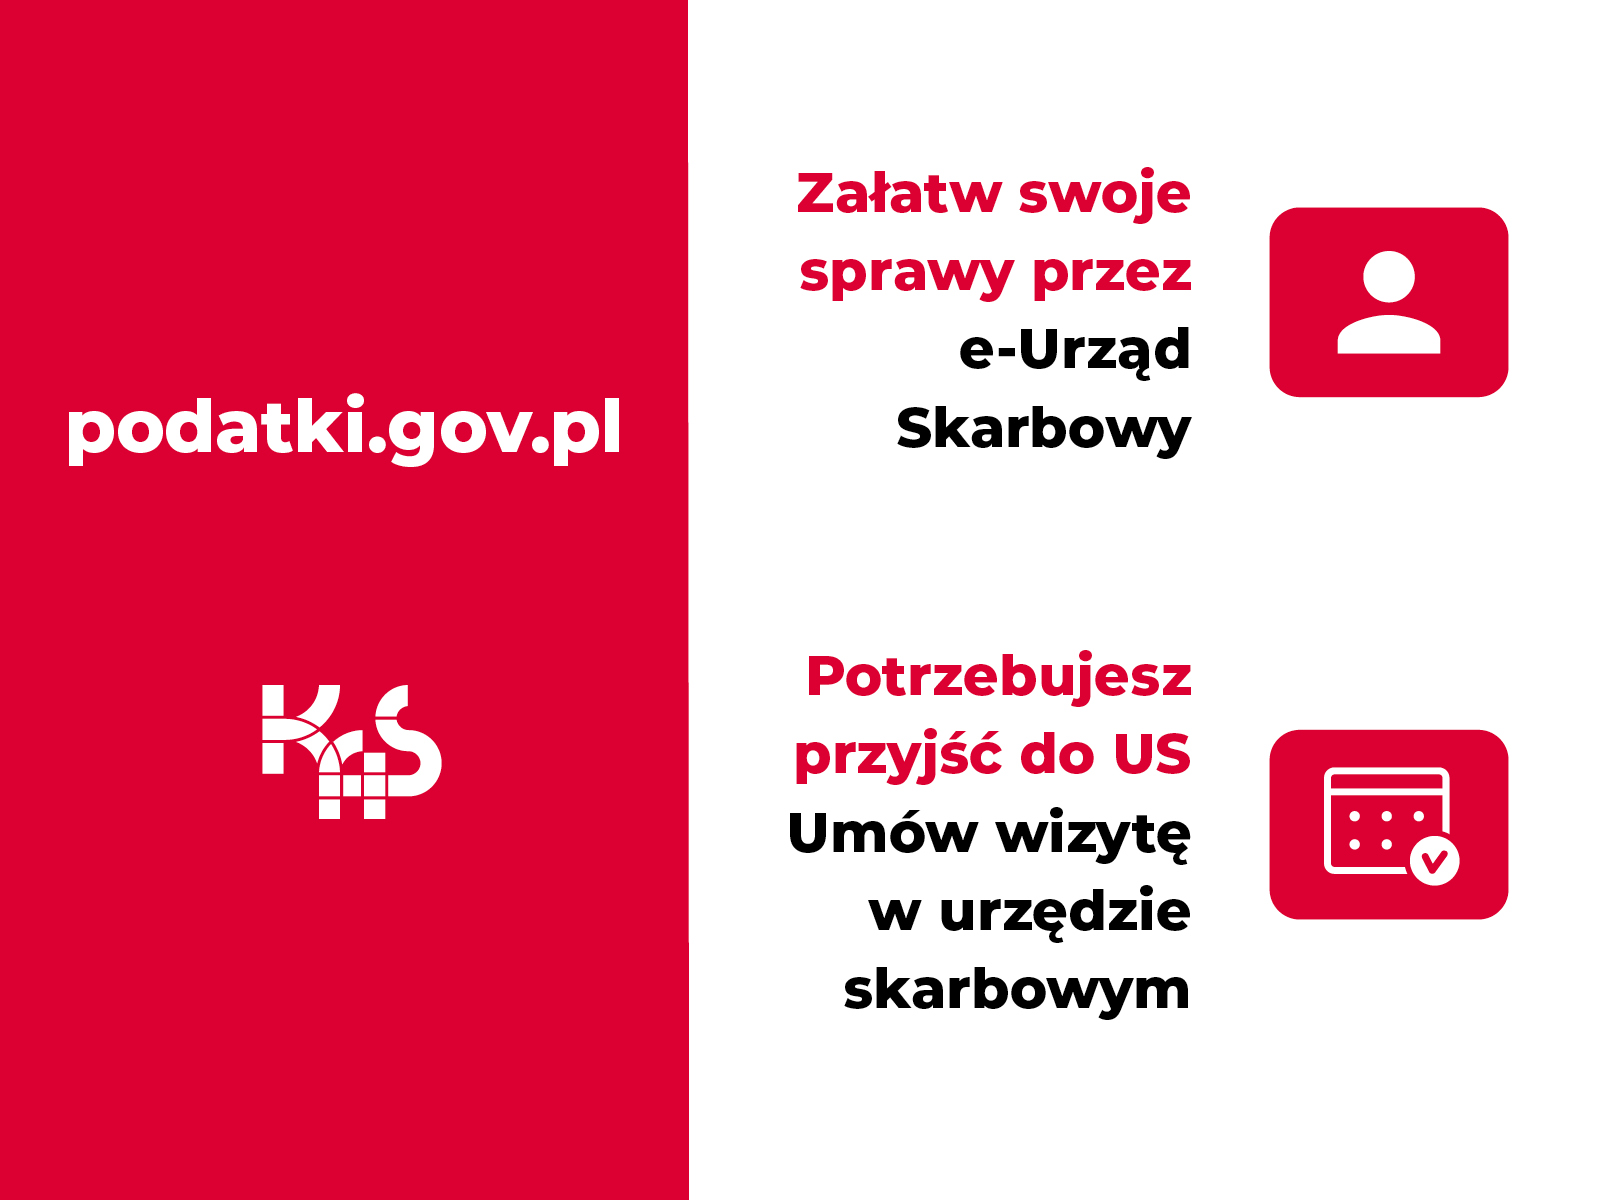 Załatw przez podatki.gov.pl